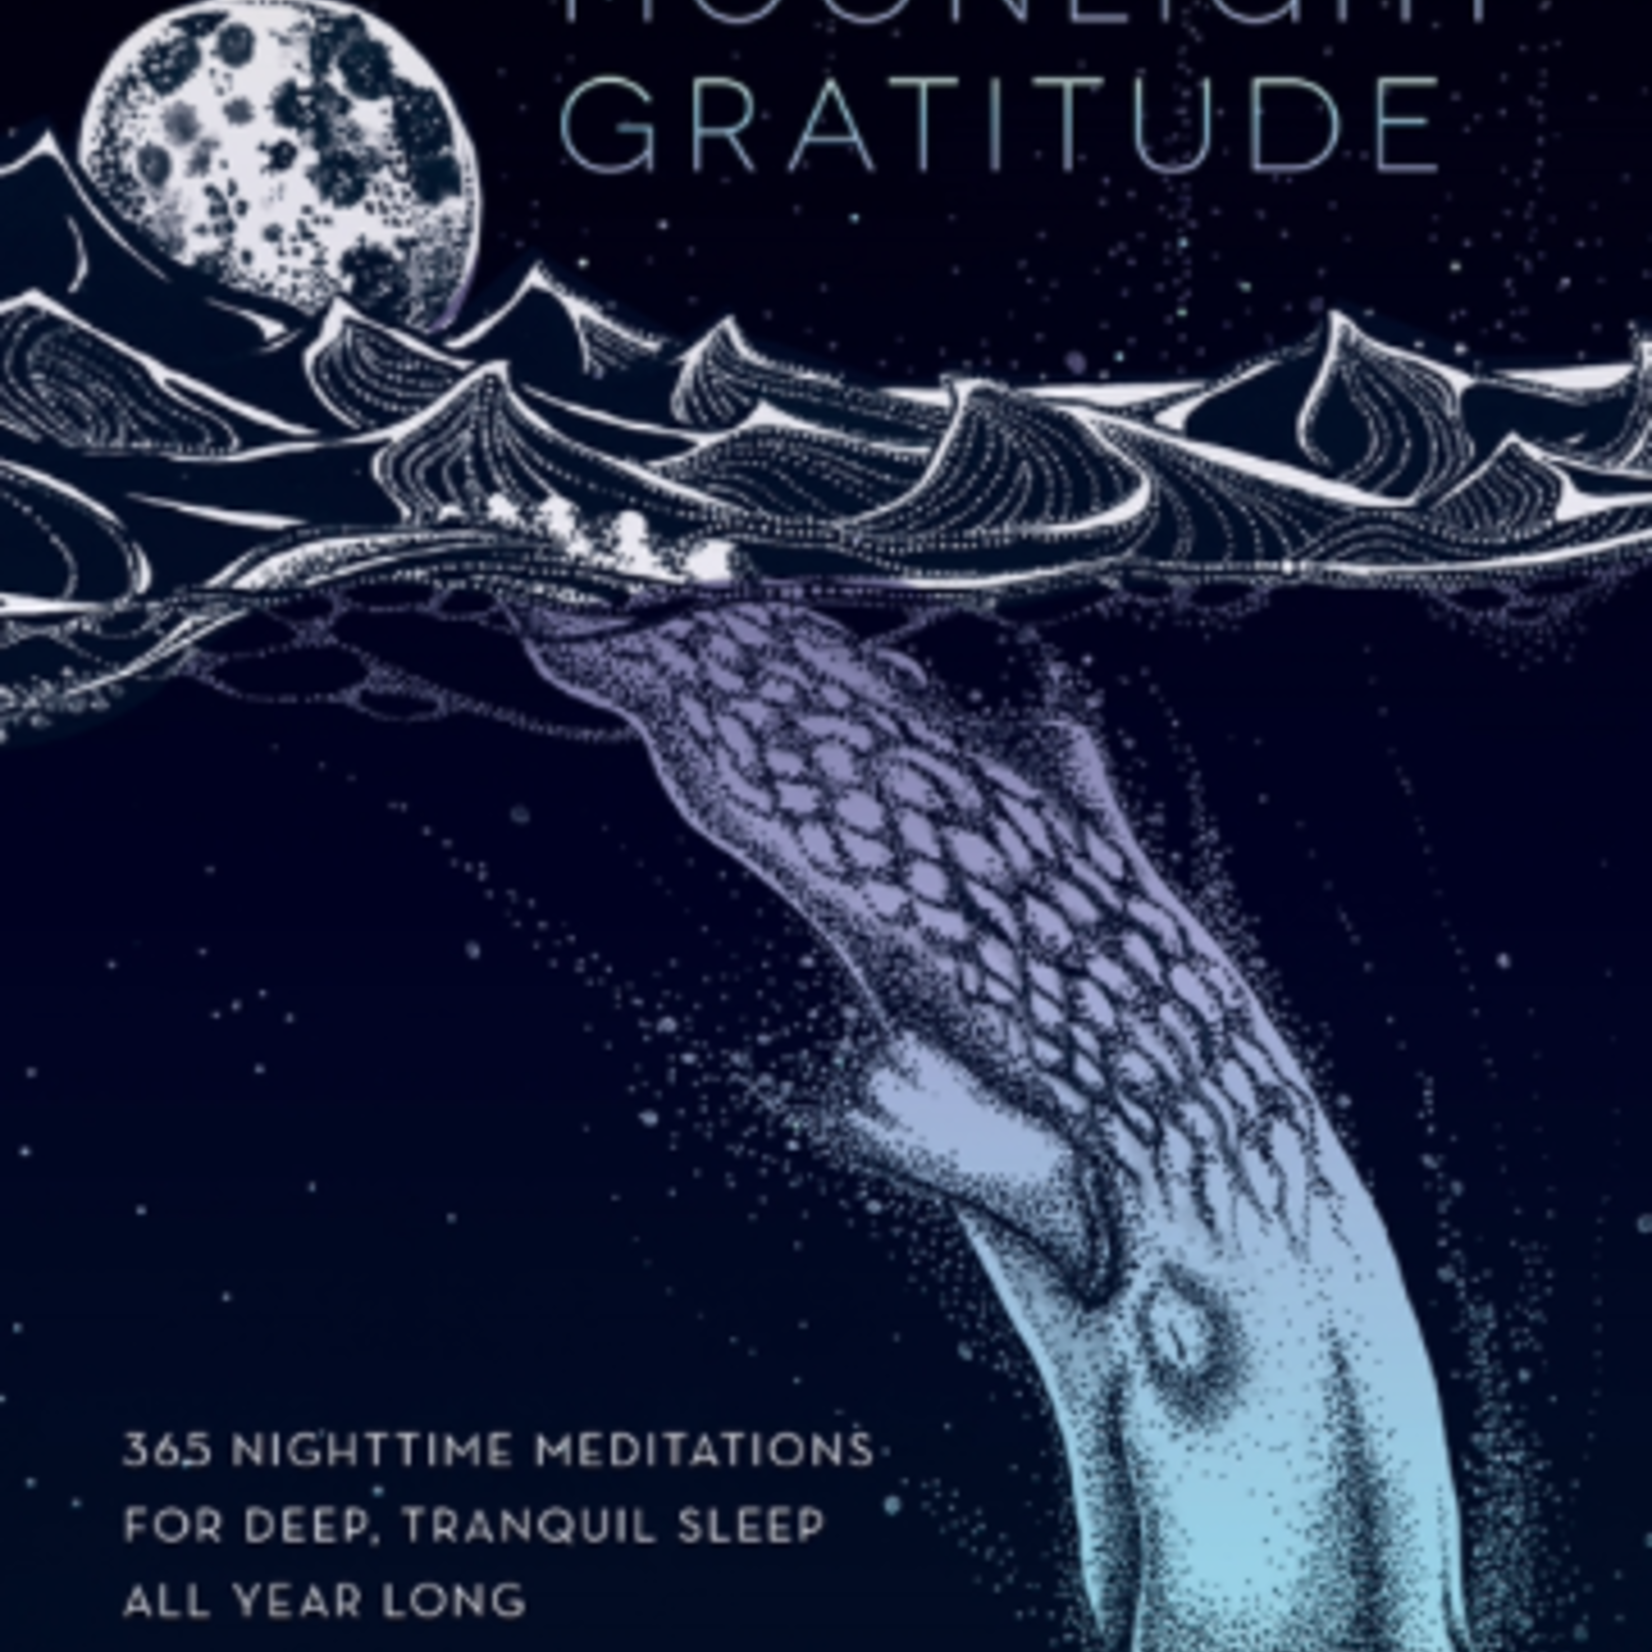 QUARTO Moonlight Gratitude-365 Nighttime Meditations For Deep, Tranquil Sleep All Year Long